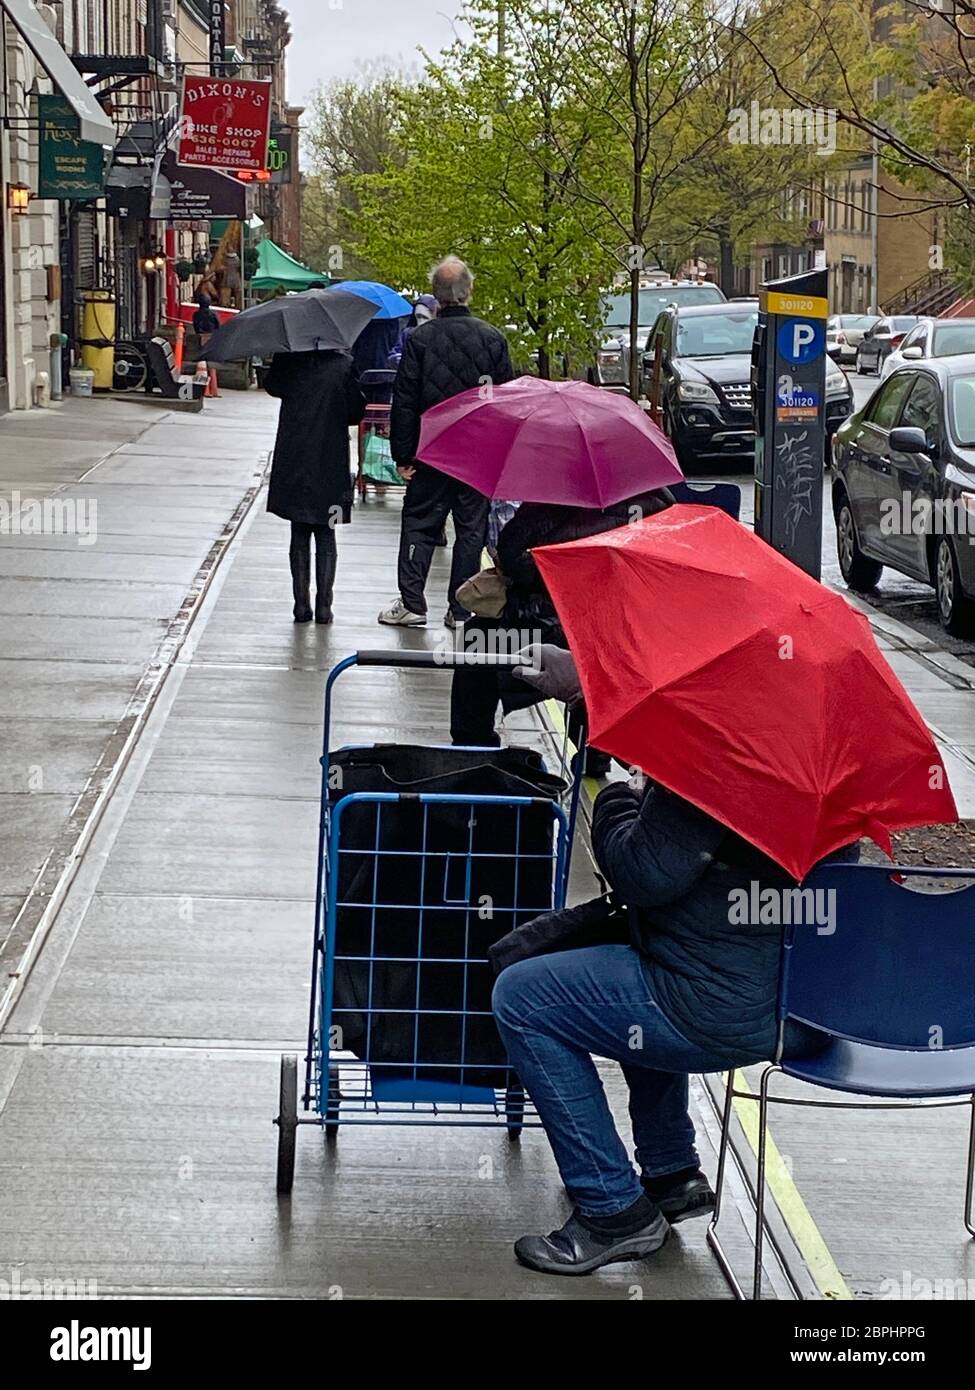 Die Einkäufer sind in der Nähe, während sie draußen auf den Park Slope Food Coop in der Union Street in Park Slope, Brooklyn, New York warten. Stockfoto